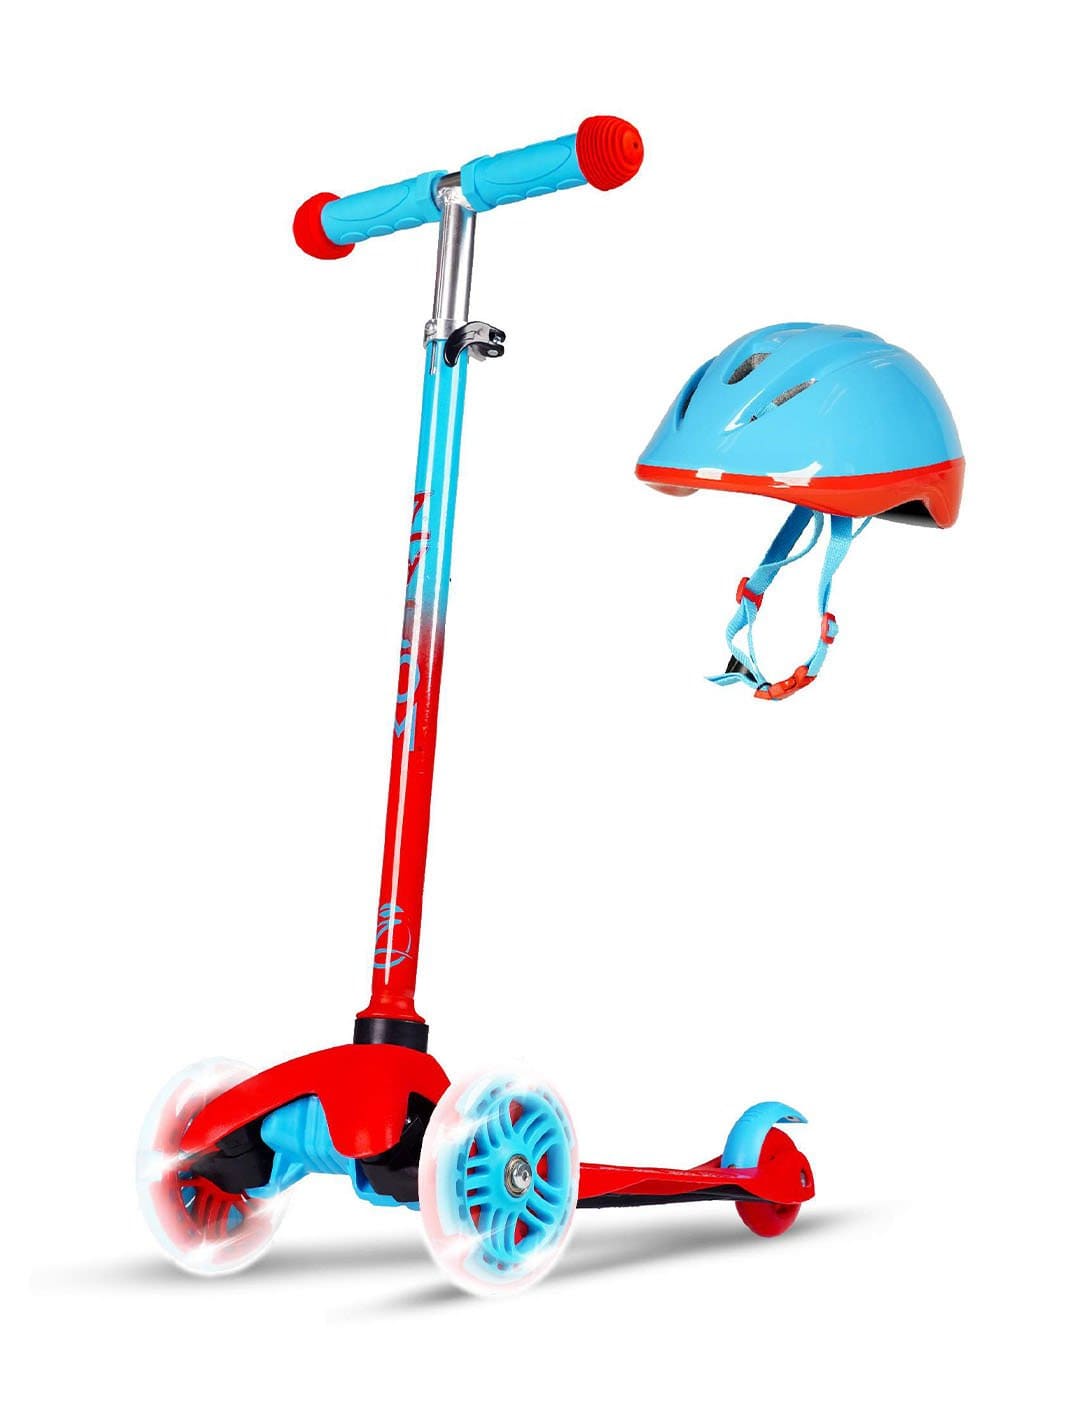 Zycom Zipper Scooter & Helmet - Red Blue - Madd Gear Global | Est 2002